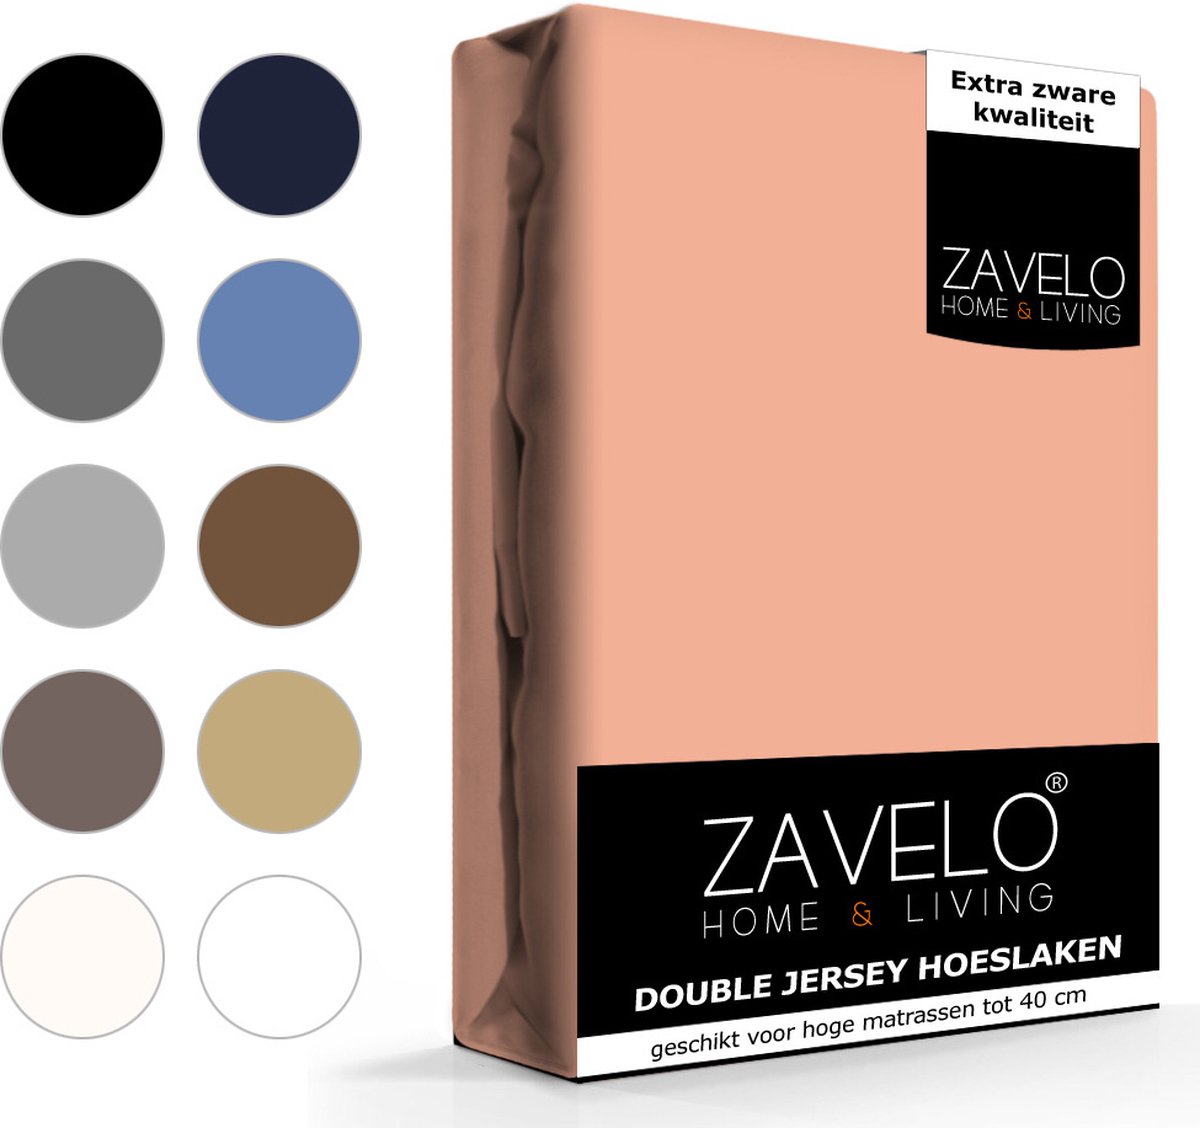 Slaaptextiel Zavelo Double Jersey Hoeslaken Perzik-2-persoons (140x200 Cm) - Roze